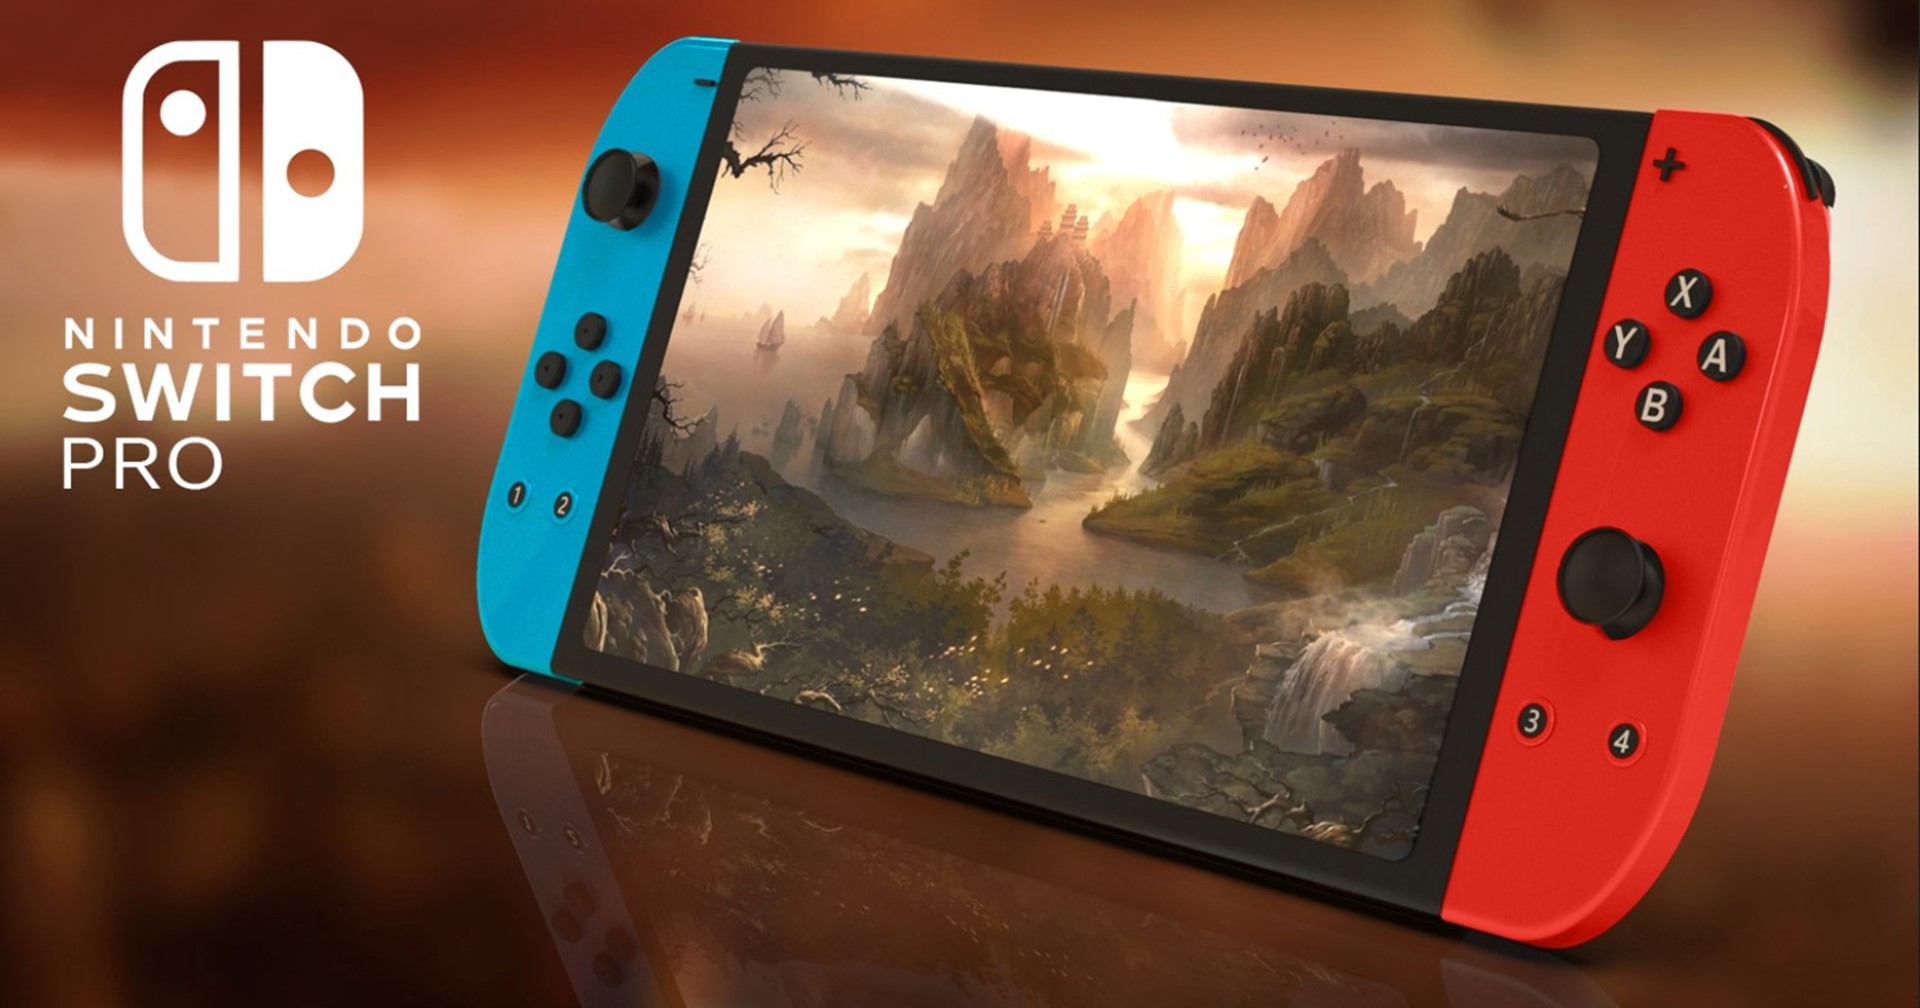 [ข่าวลือ] Nintendo Switch Pro มีแผนสร้างจริง แต่ถูกยกเลิกไปแล้ว